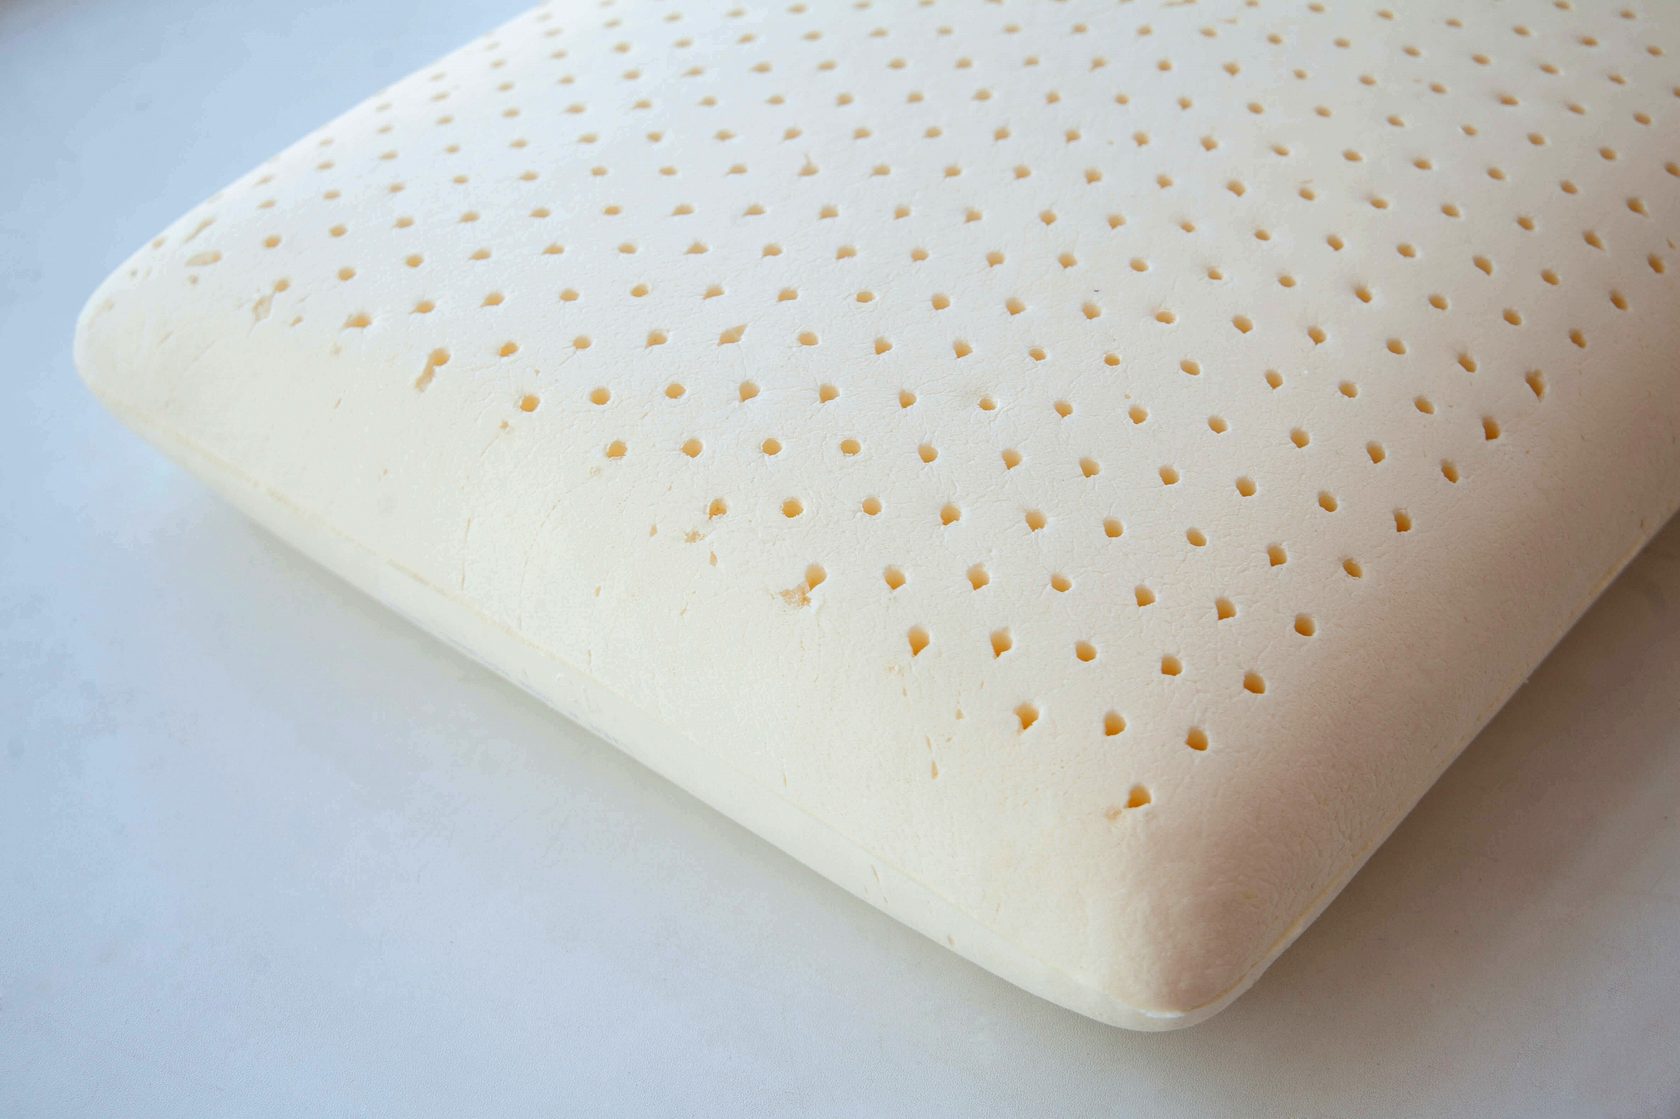 latex pillows design ideas